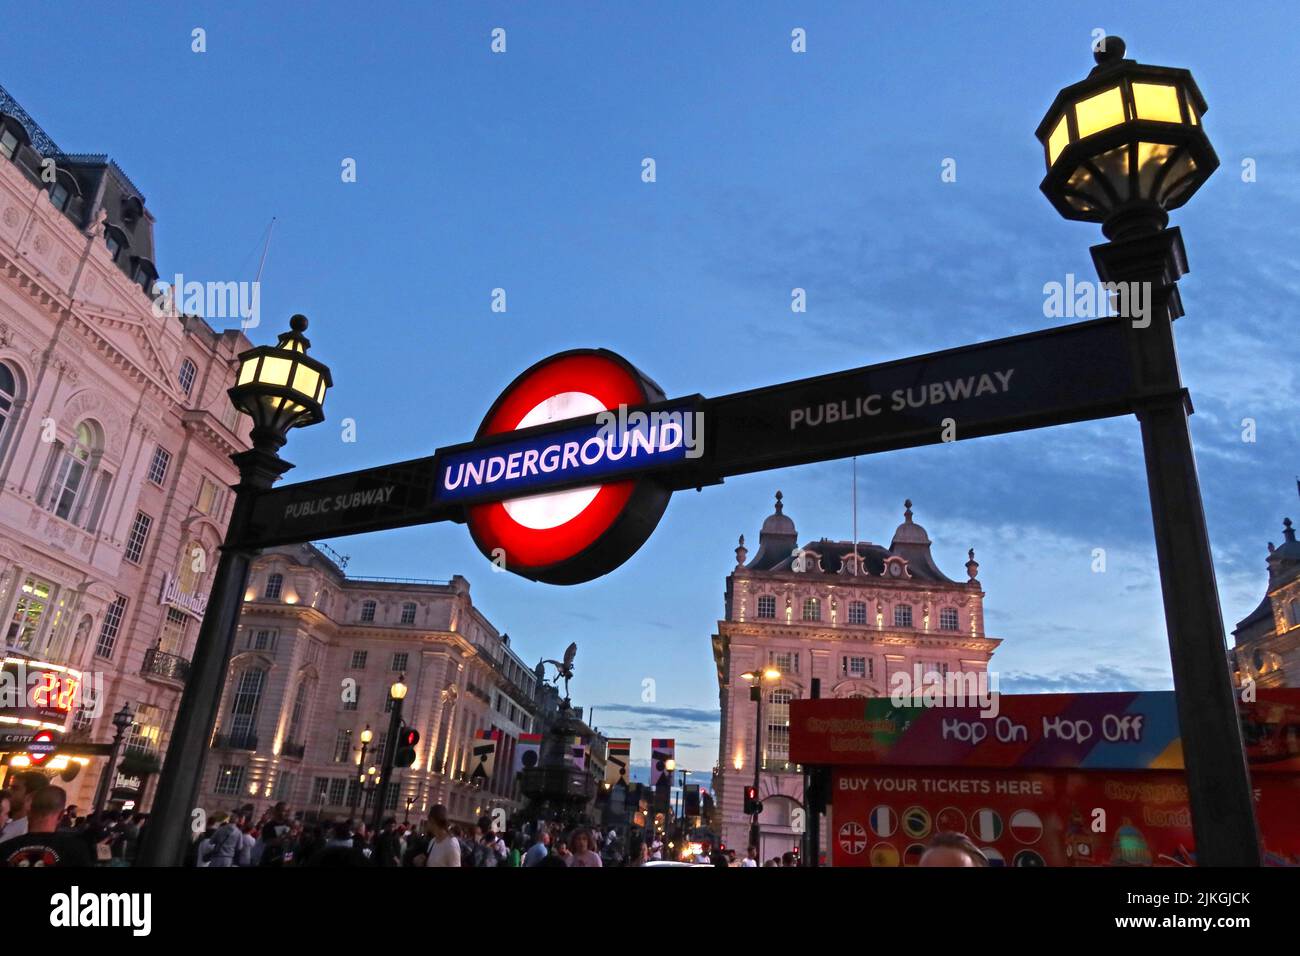 London Underground-Schilder in der Abenddämmerung im Zentrum von London, Piccadilly und Regent Street, London, England, UK, W1B 3AB Stockfoto